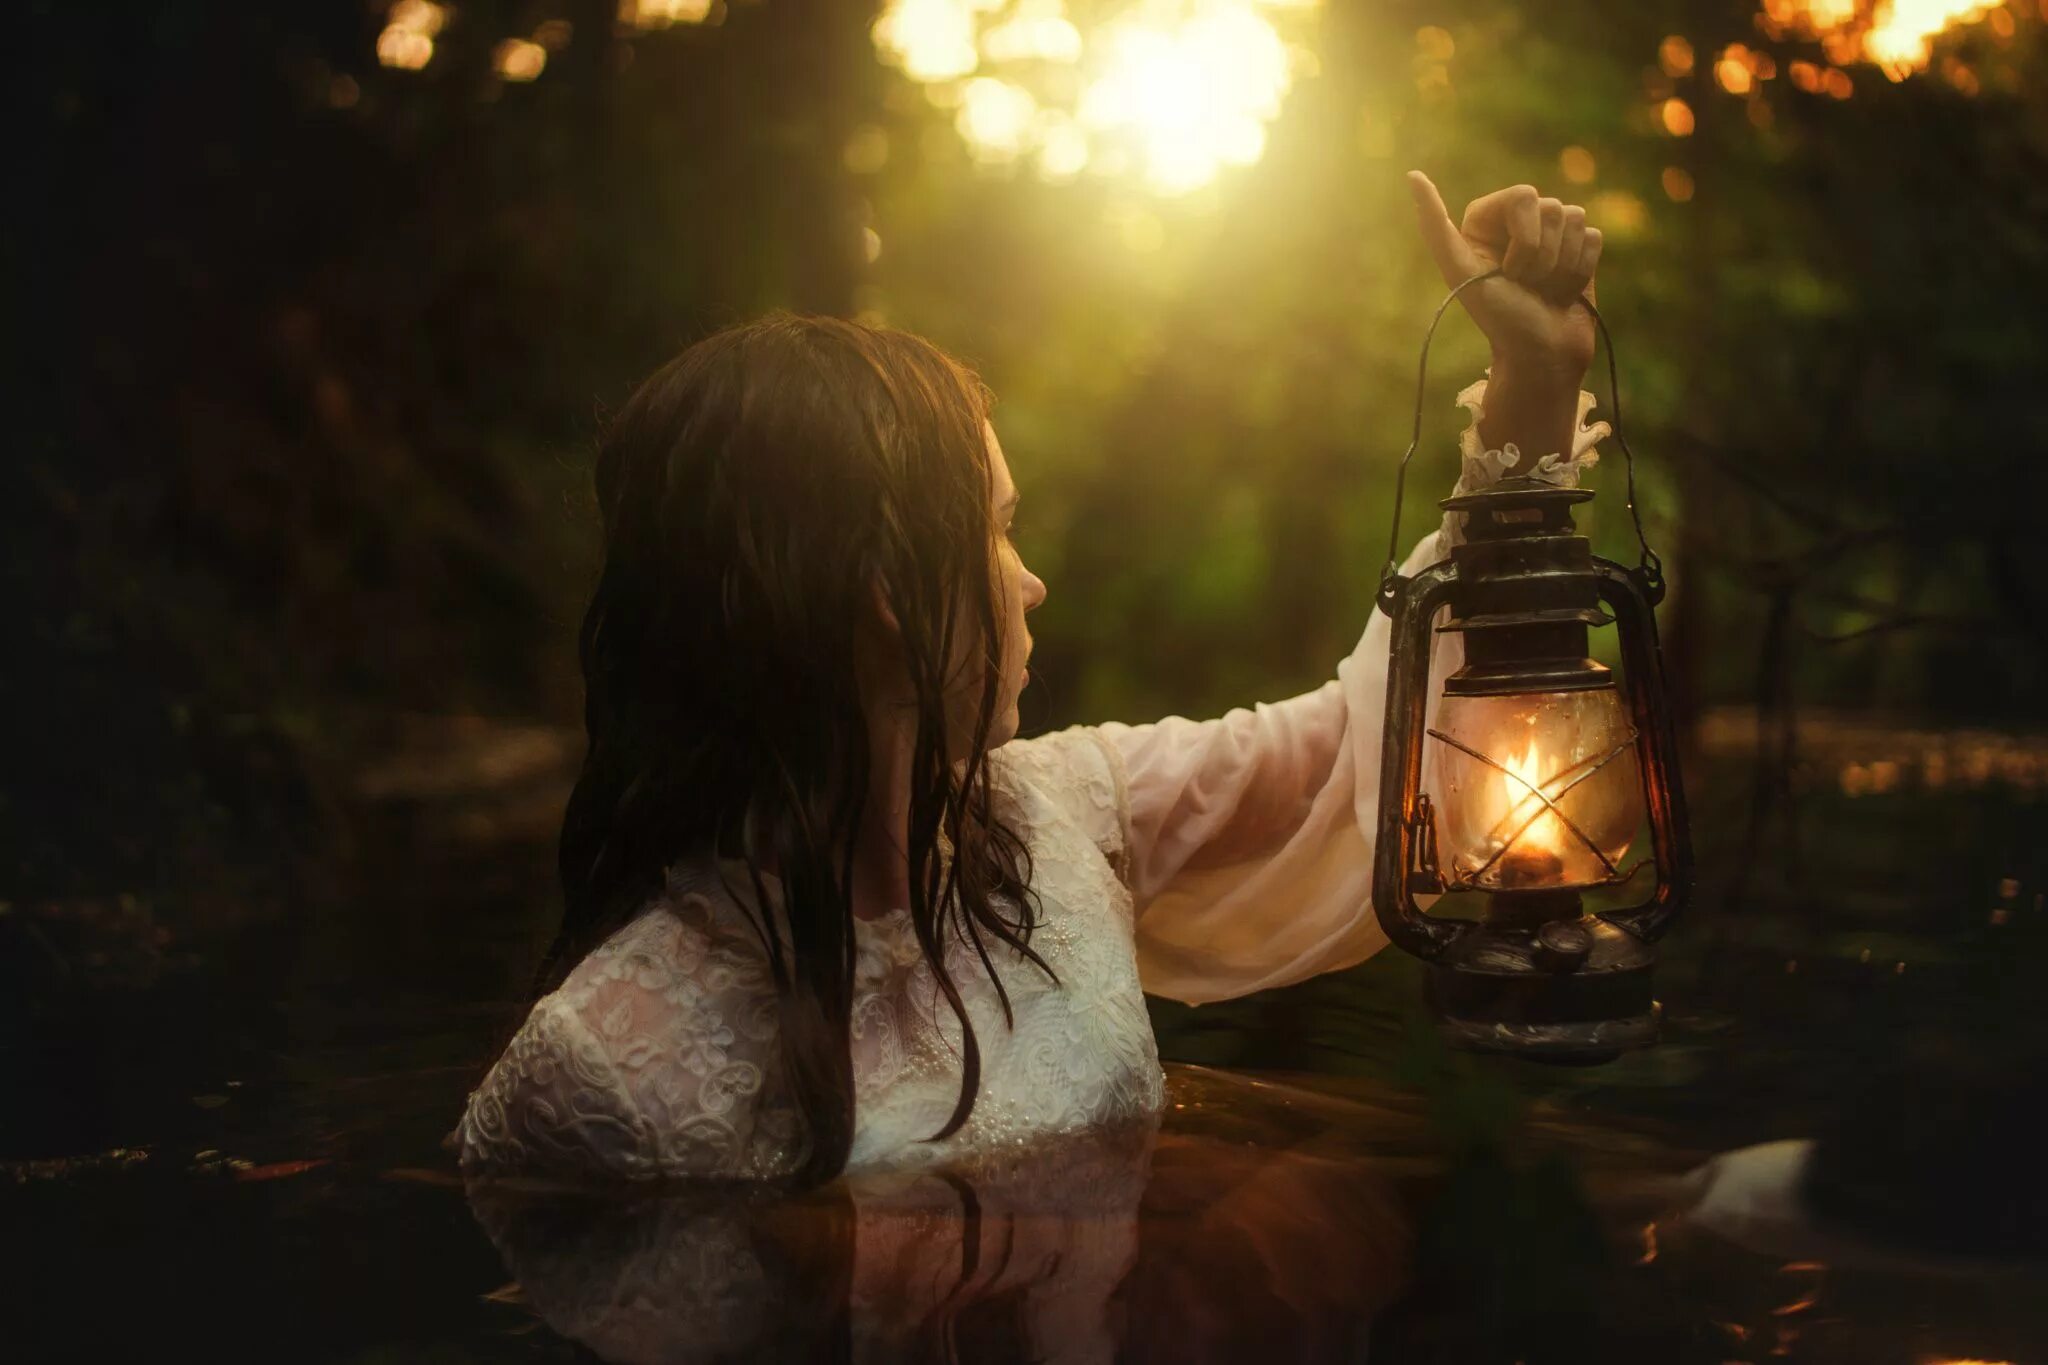 Девушка с фонарем в руке. Девушка с фонарем в лесу. Девушка с керосиновой лампой. Девушка с фонариком в лесу. Поздно вечером девушка